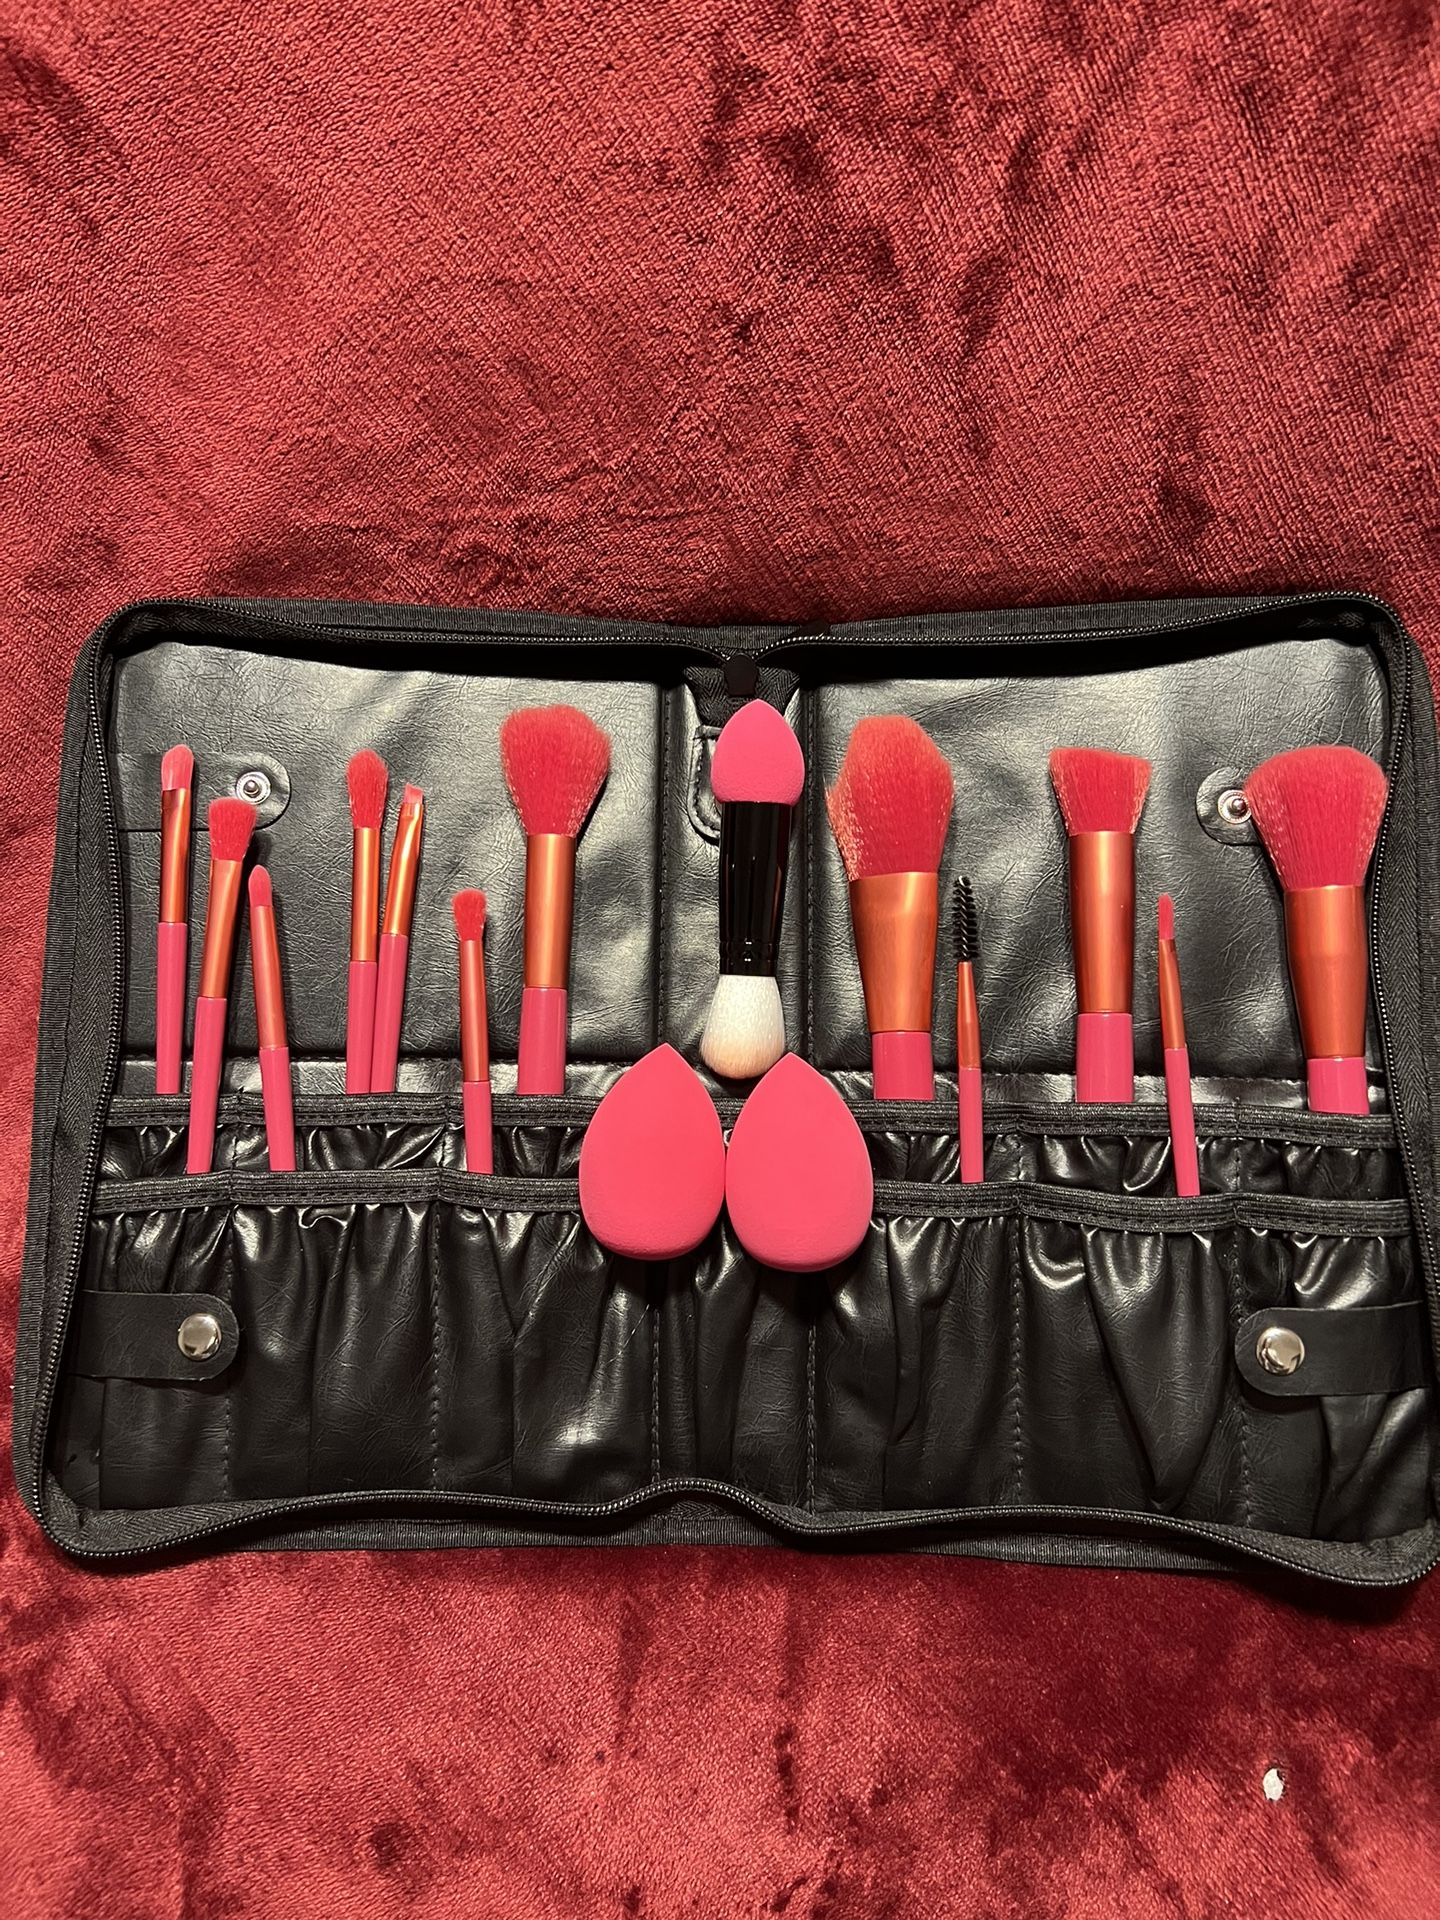 MakeUp Case, 12 Piece Brush Set & 2 Beauty Blending Sponges *NEW*